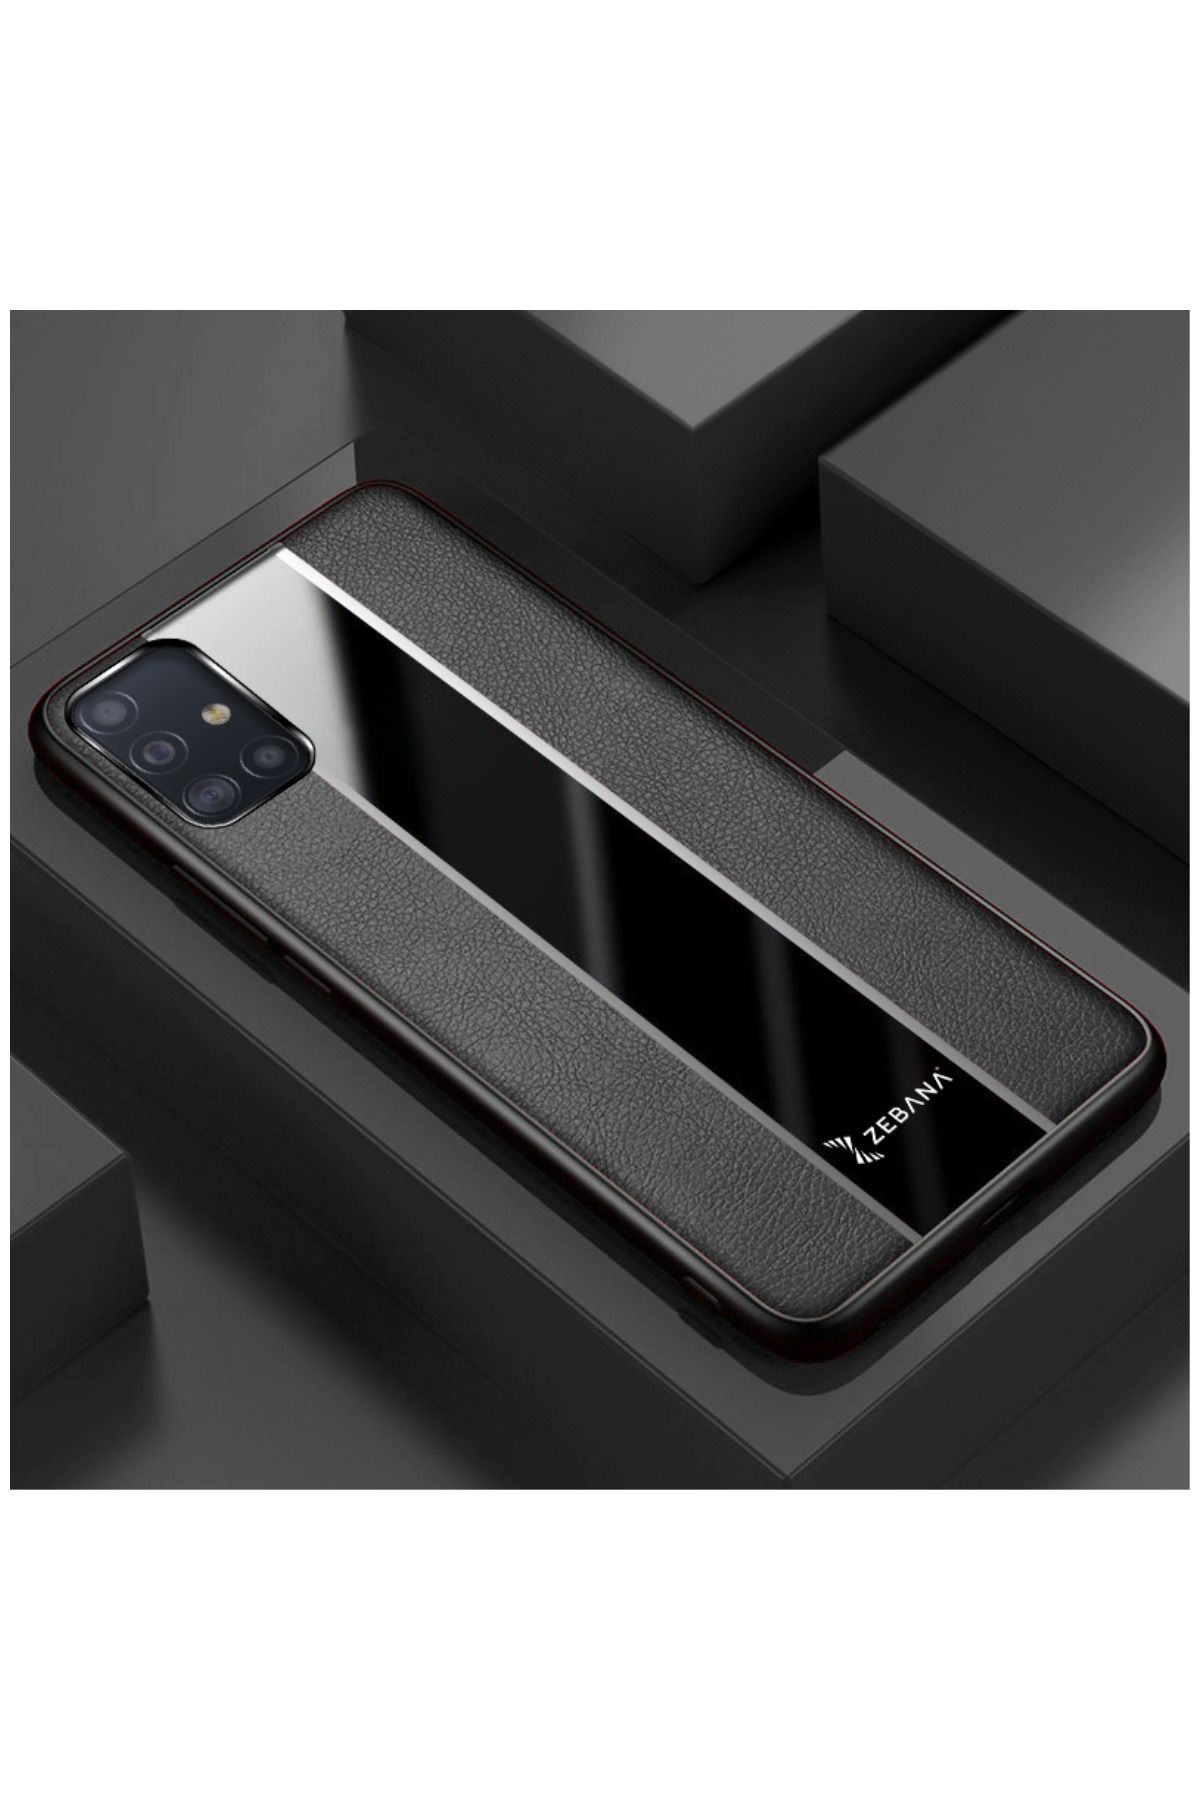 Zebana Samsung Galaxy A51 Uyumlu Kılıf Premium Deri Kılıf Siyah